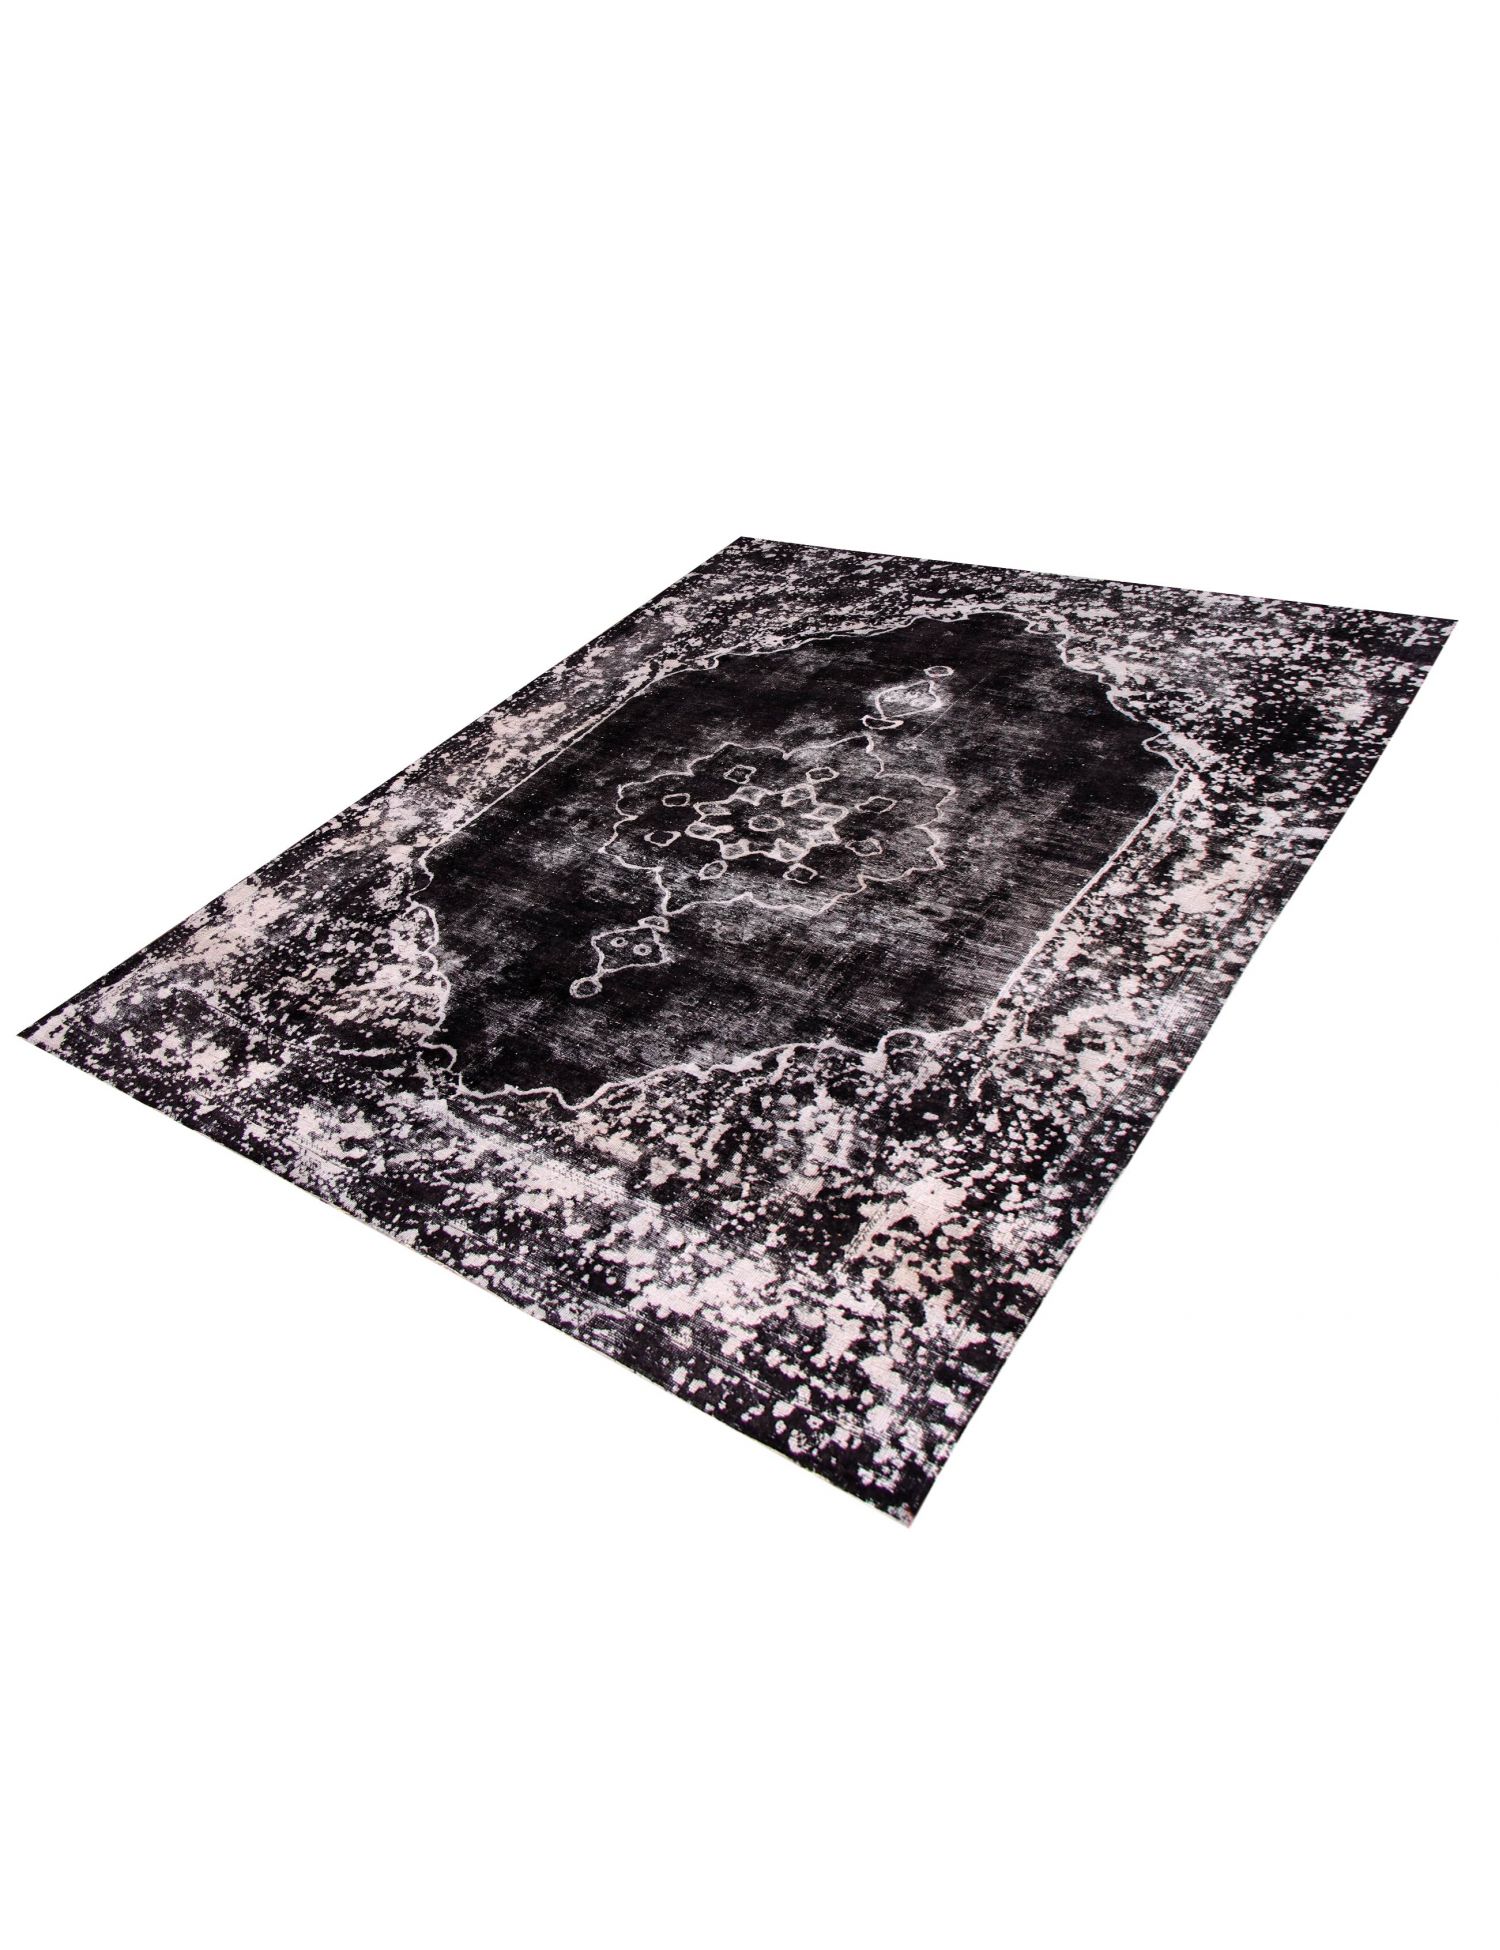 Persian Vintage Carpet  black <br/>289 x 204 cm